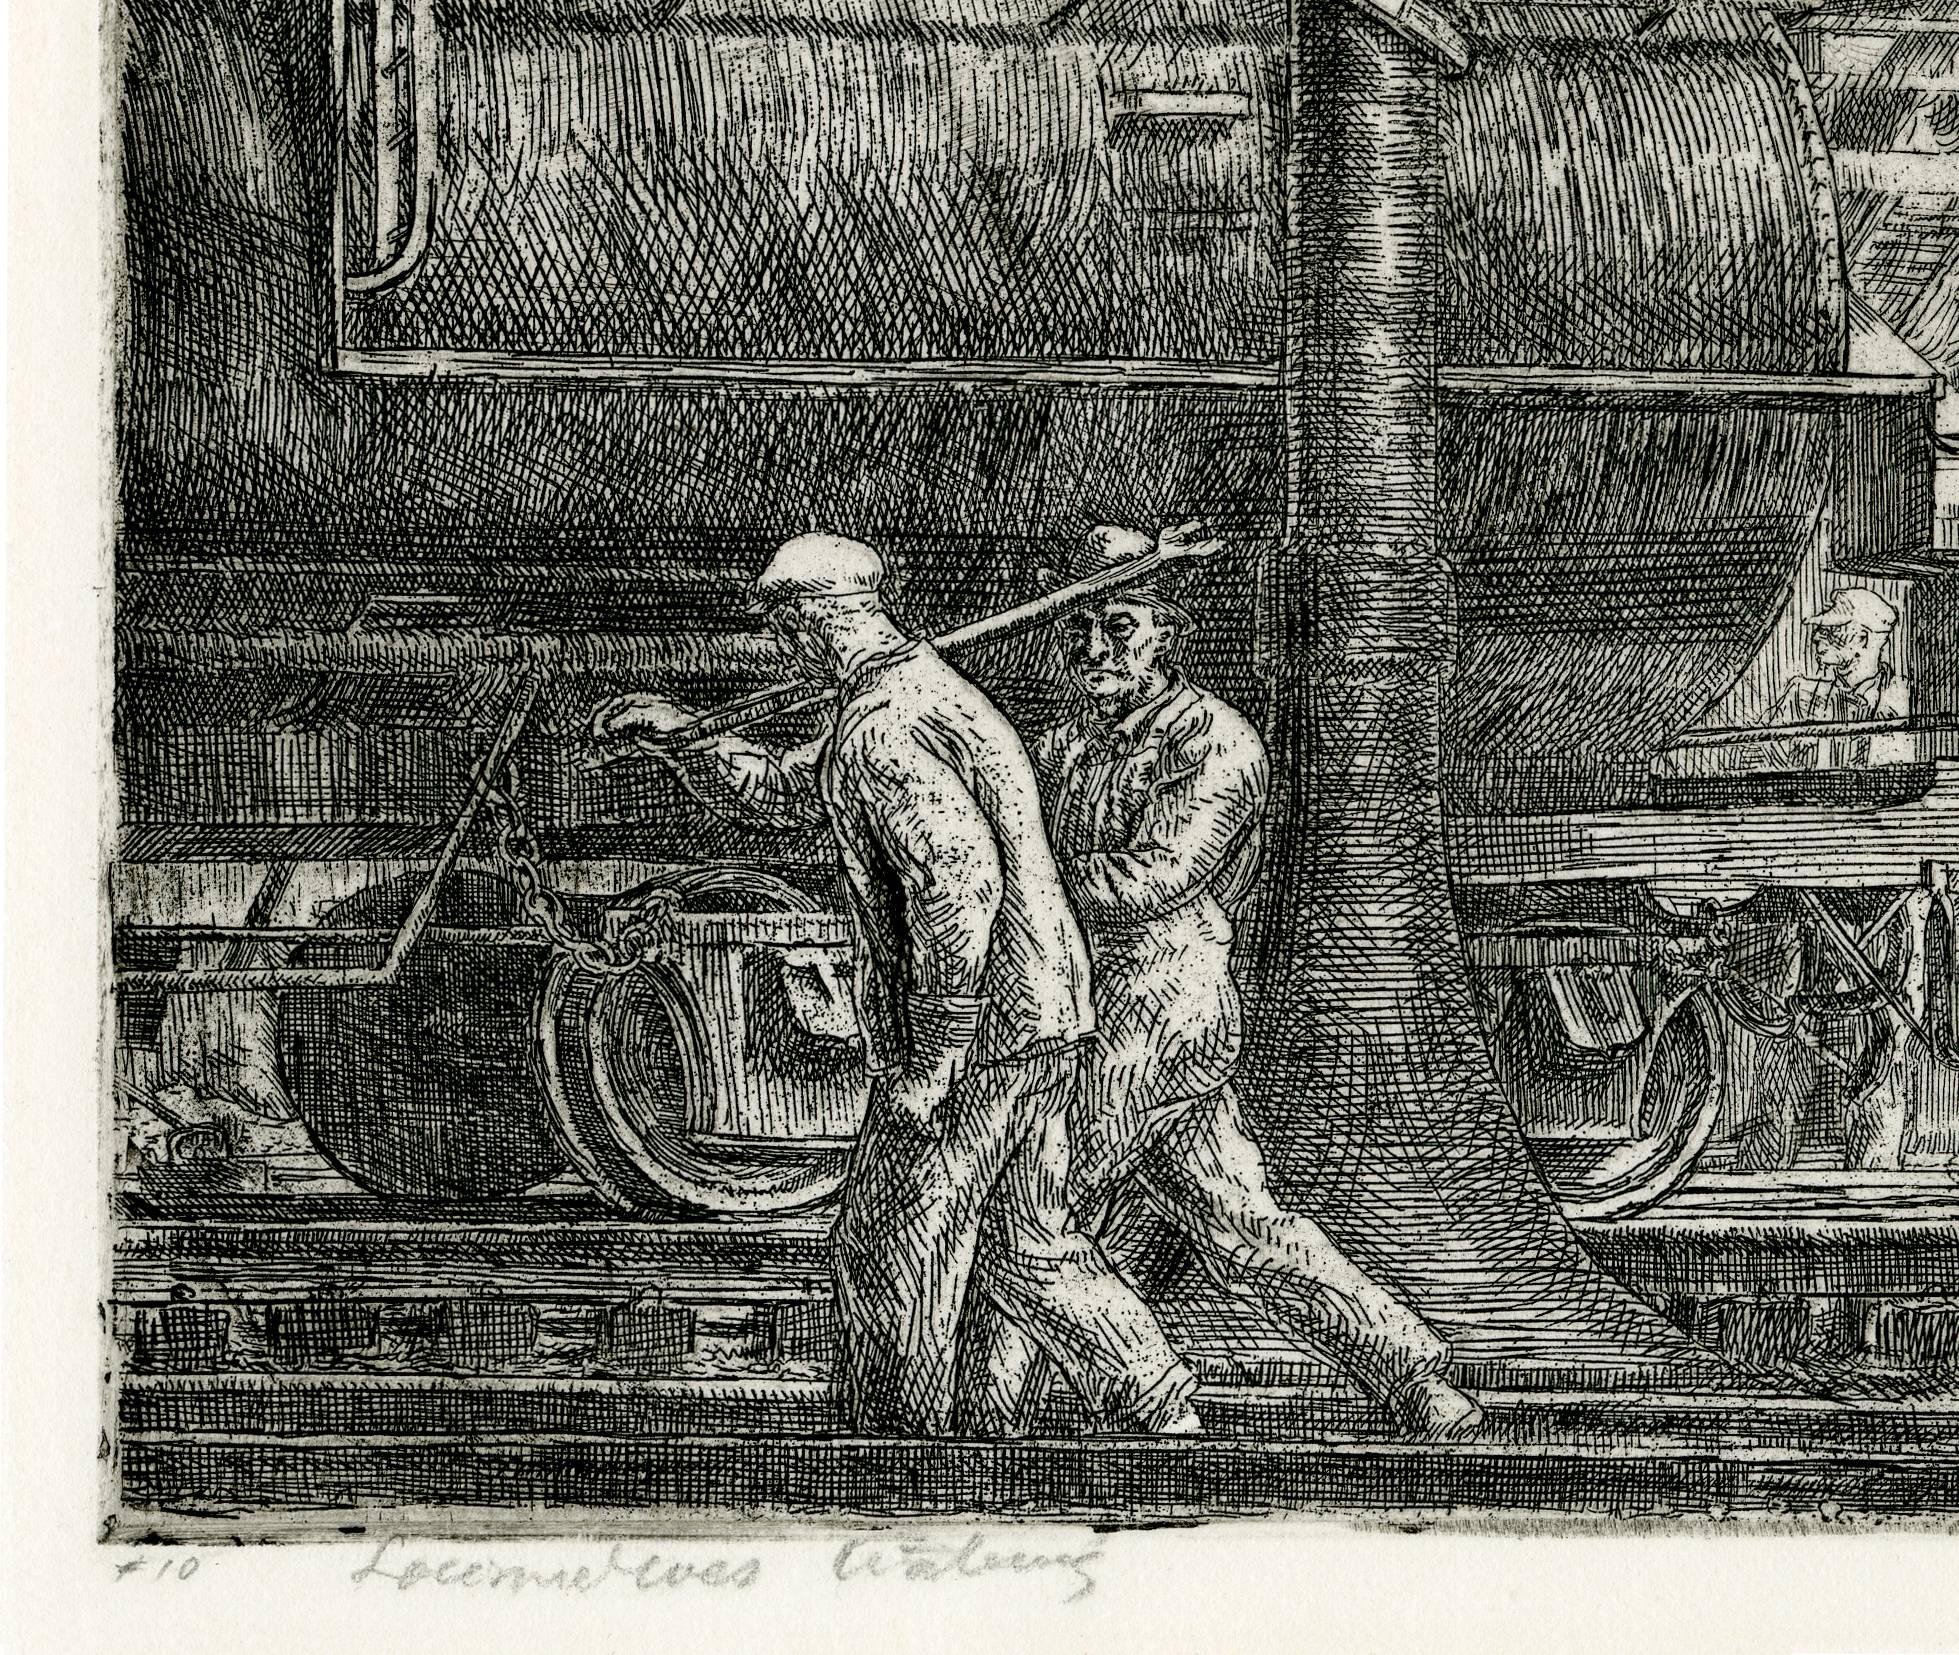 Locomotives Watering (Erie R.R. Locos Watering) - American Realist Print by Reginald Marsh